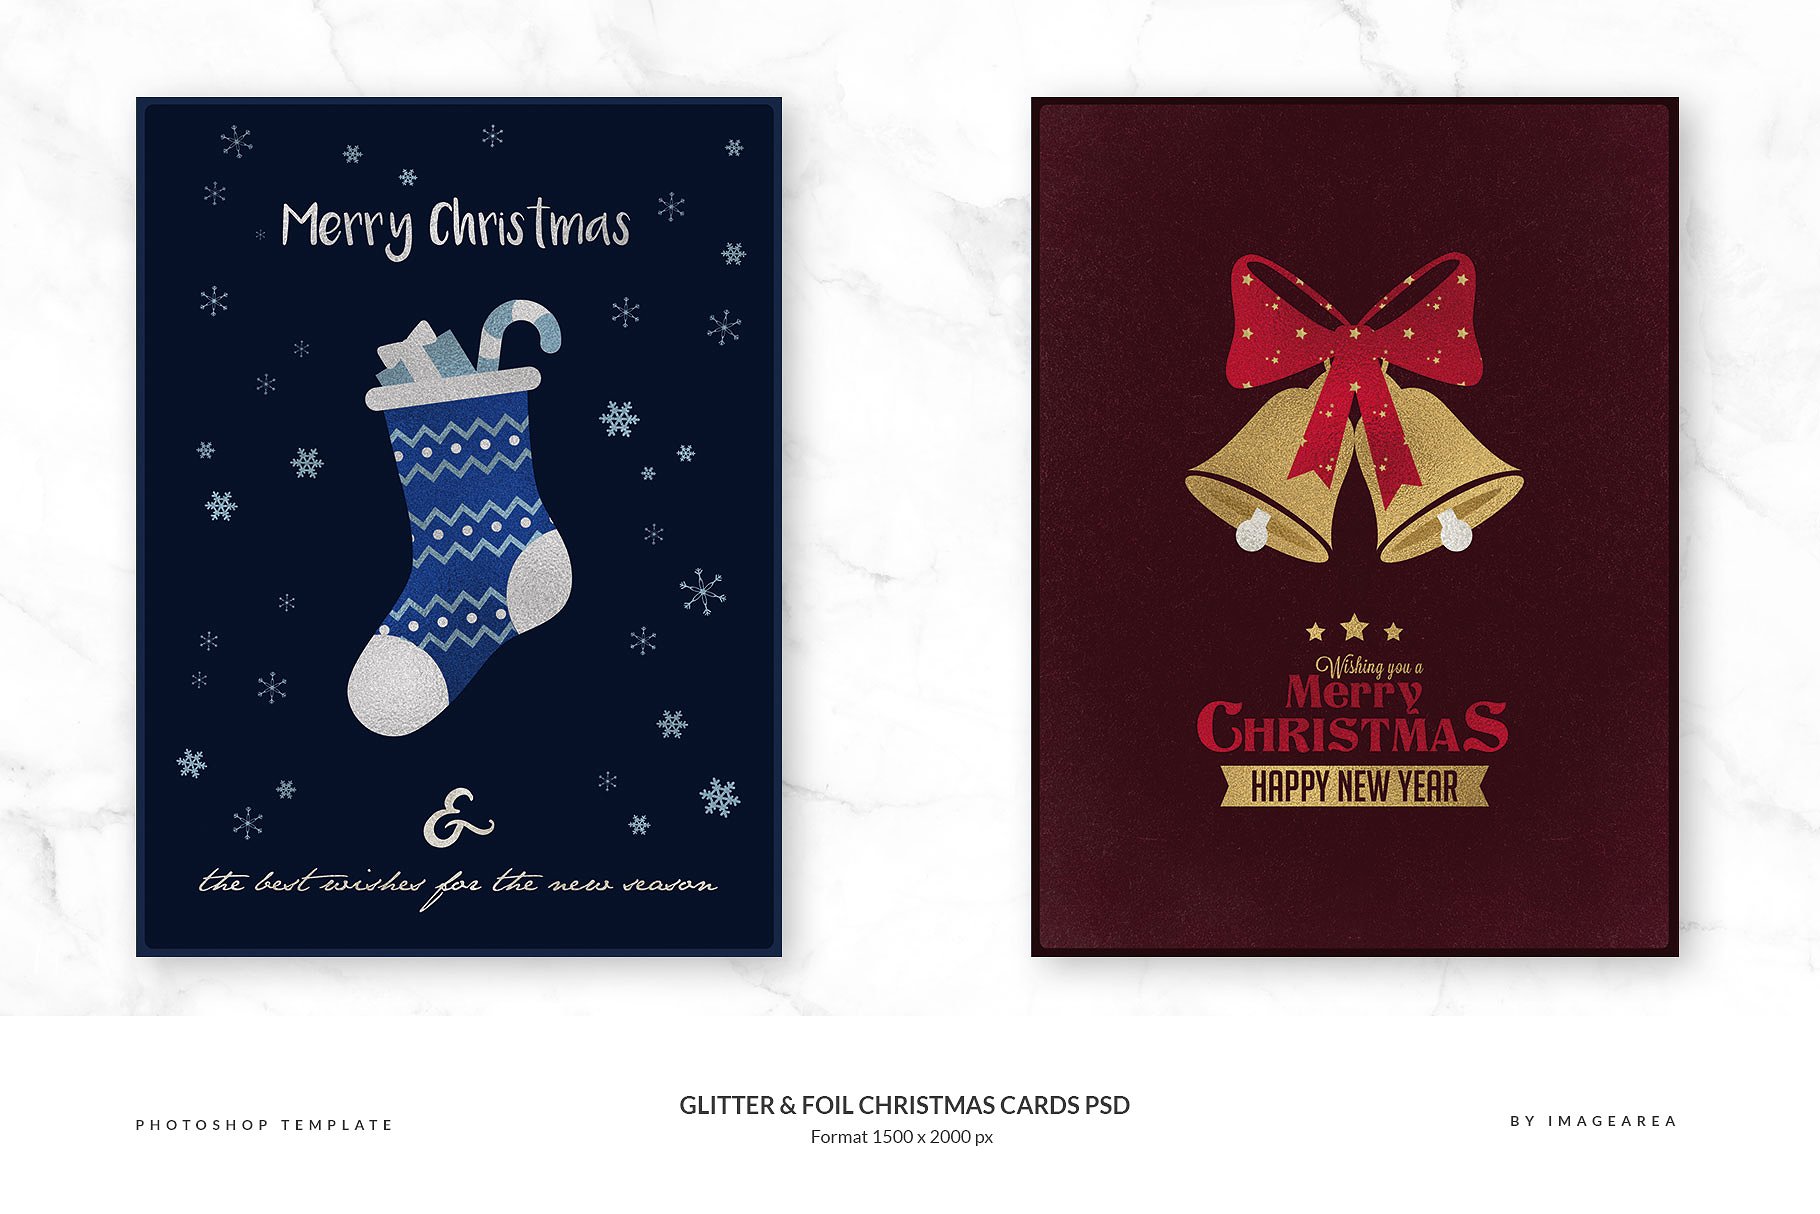 闪粉&金箔圣诞卡PSD模板合集 Glitter & Foil Christmas Cards PSD插图(3)